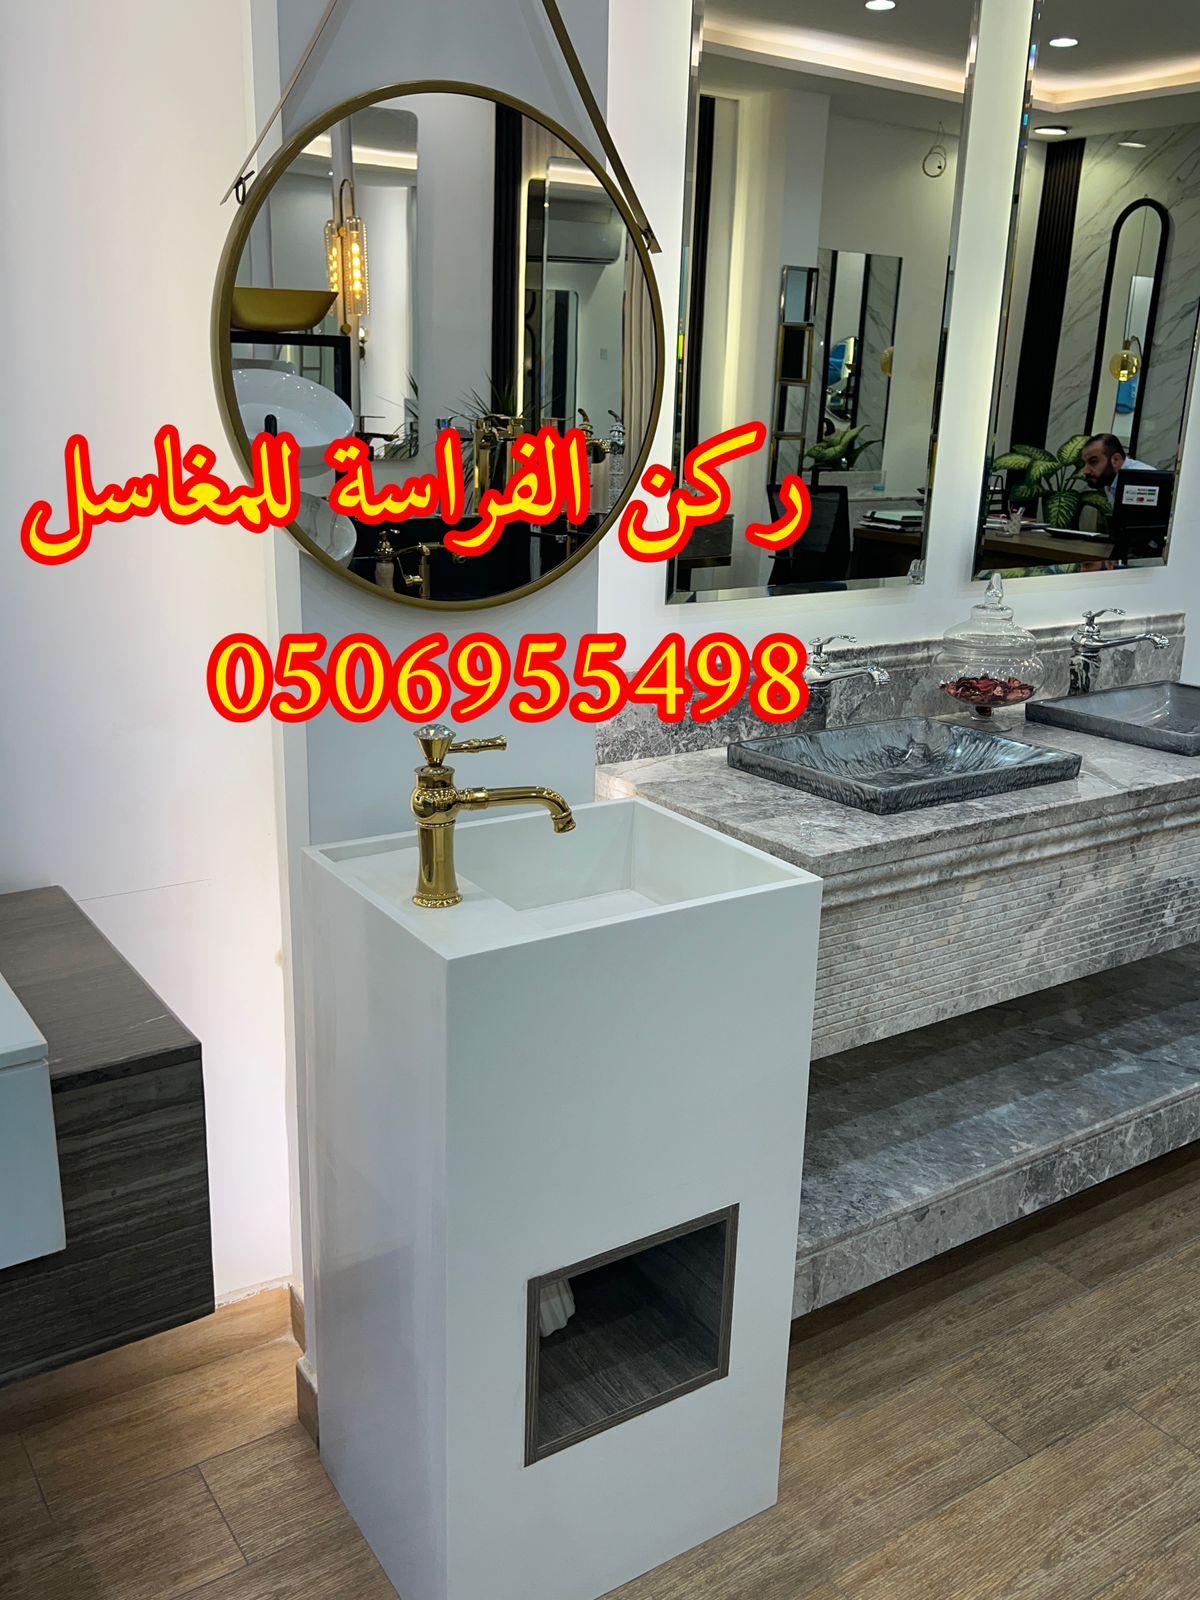 تفصيل ديكورات مغاسل حمامات رخام في الرياض,0506955498 428136606